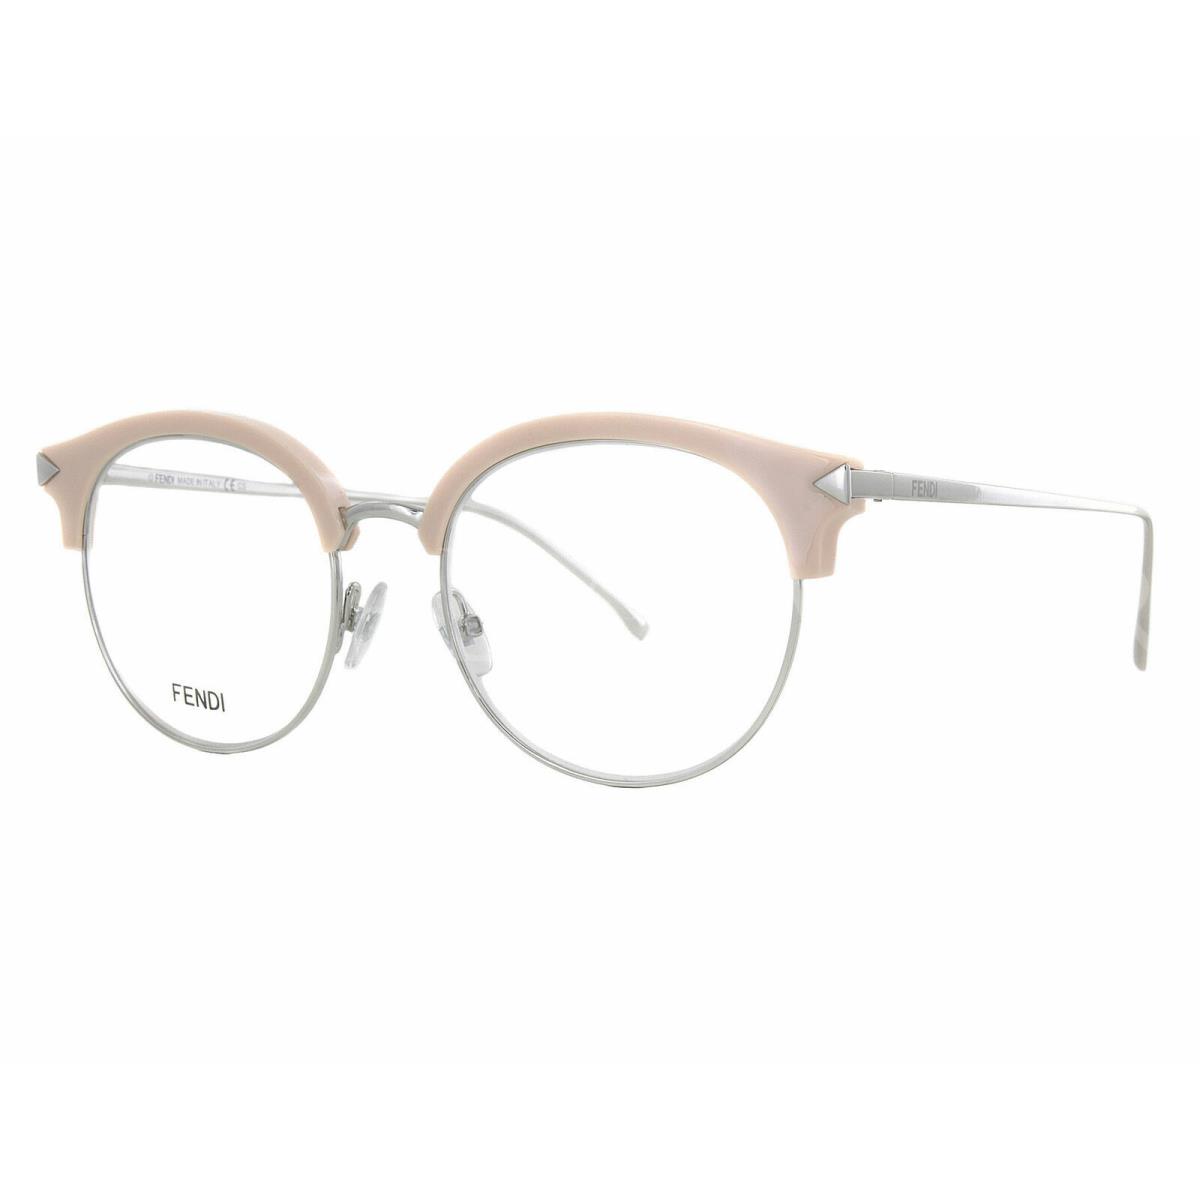 Fendi Eyeglasses FF0165 V5N18 51mm Pink Optical Eyeglasses Frames